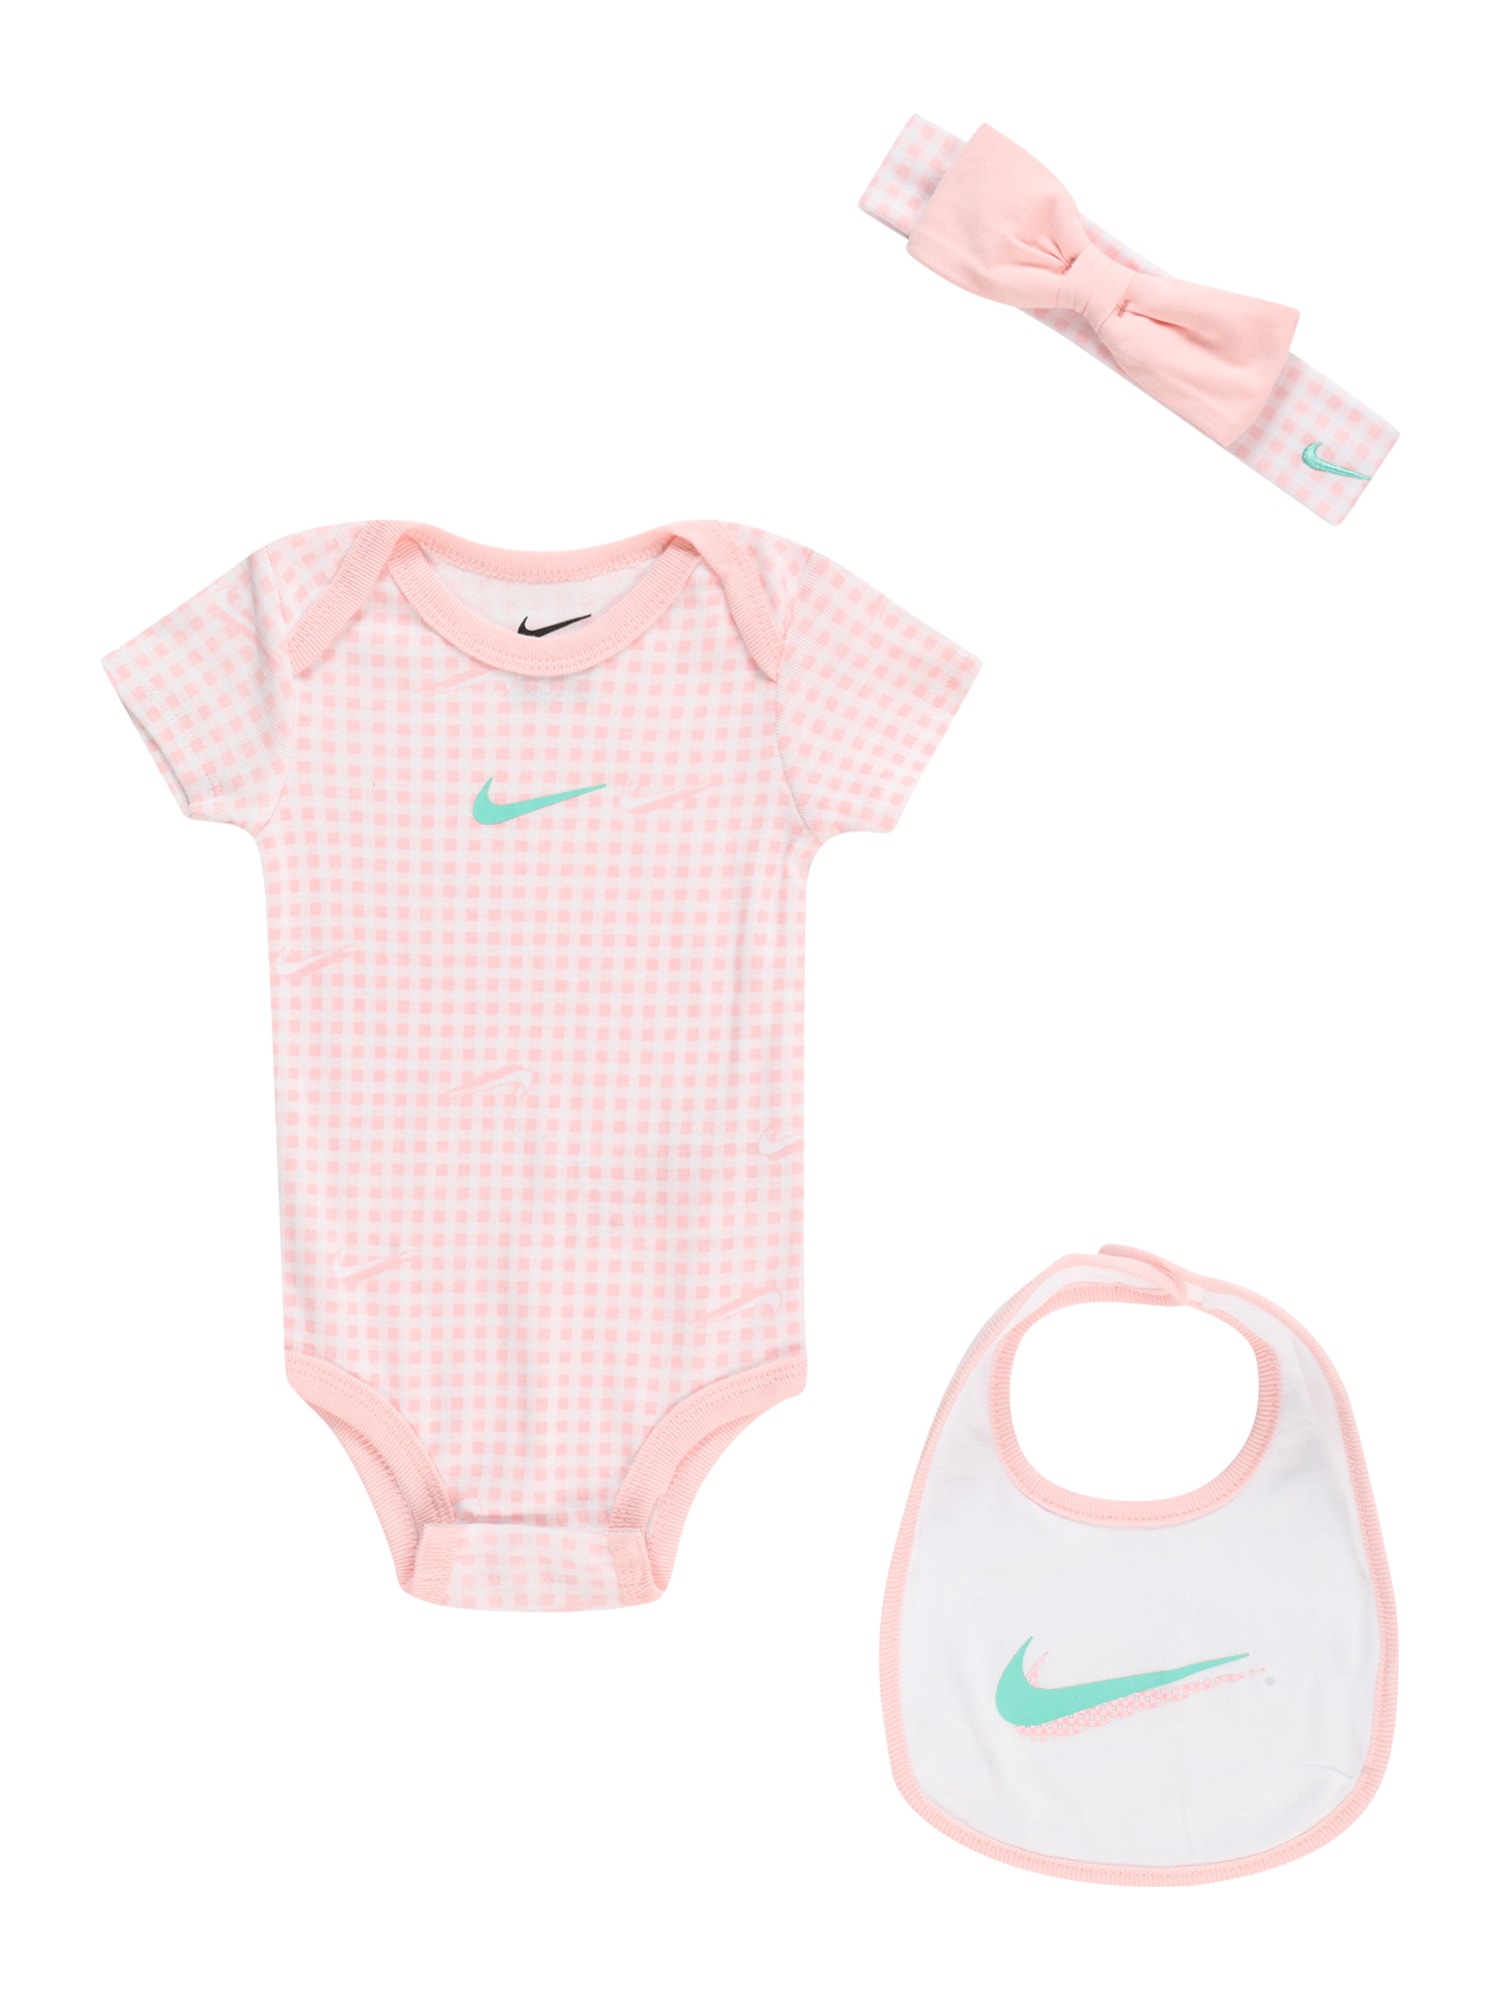 Деца > Бебета > НОВО > Облекло Nike Sportswear Комплект  тюркоазен / светлорозово / бяло